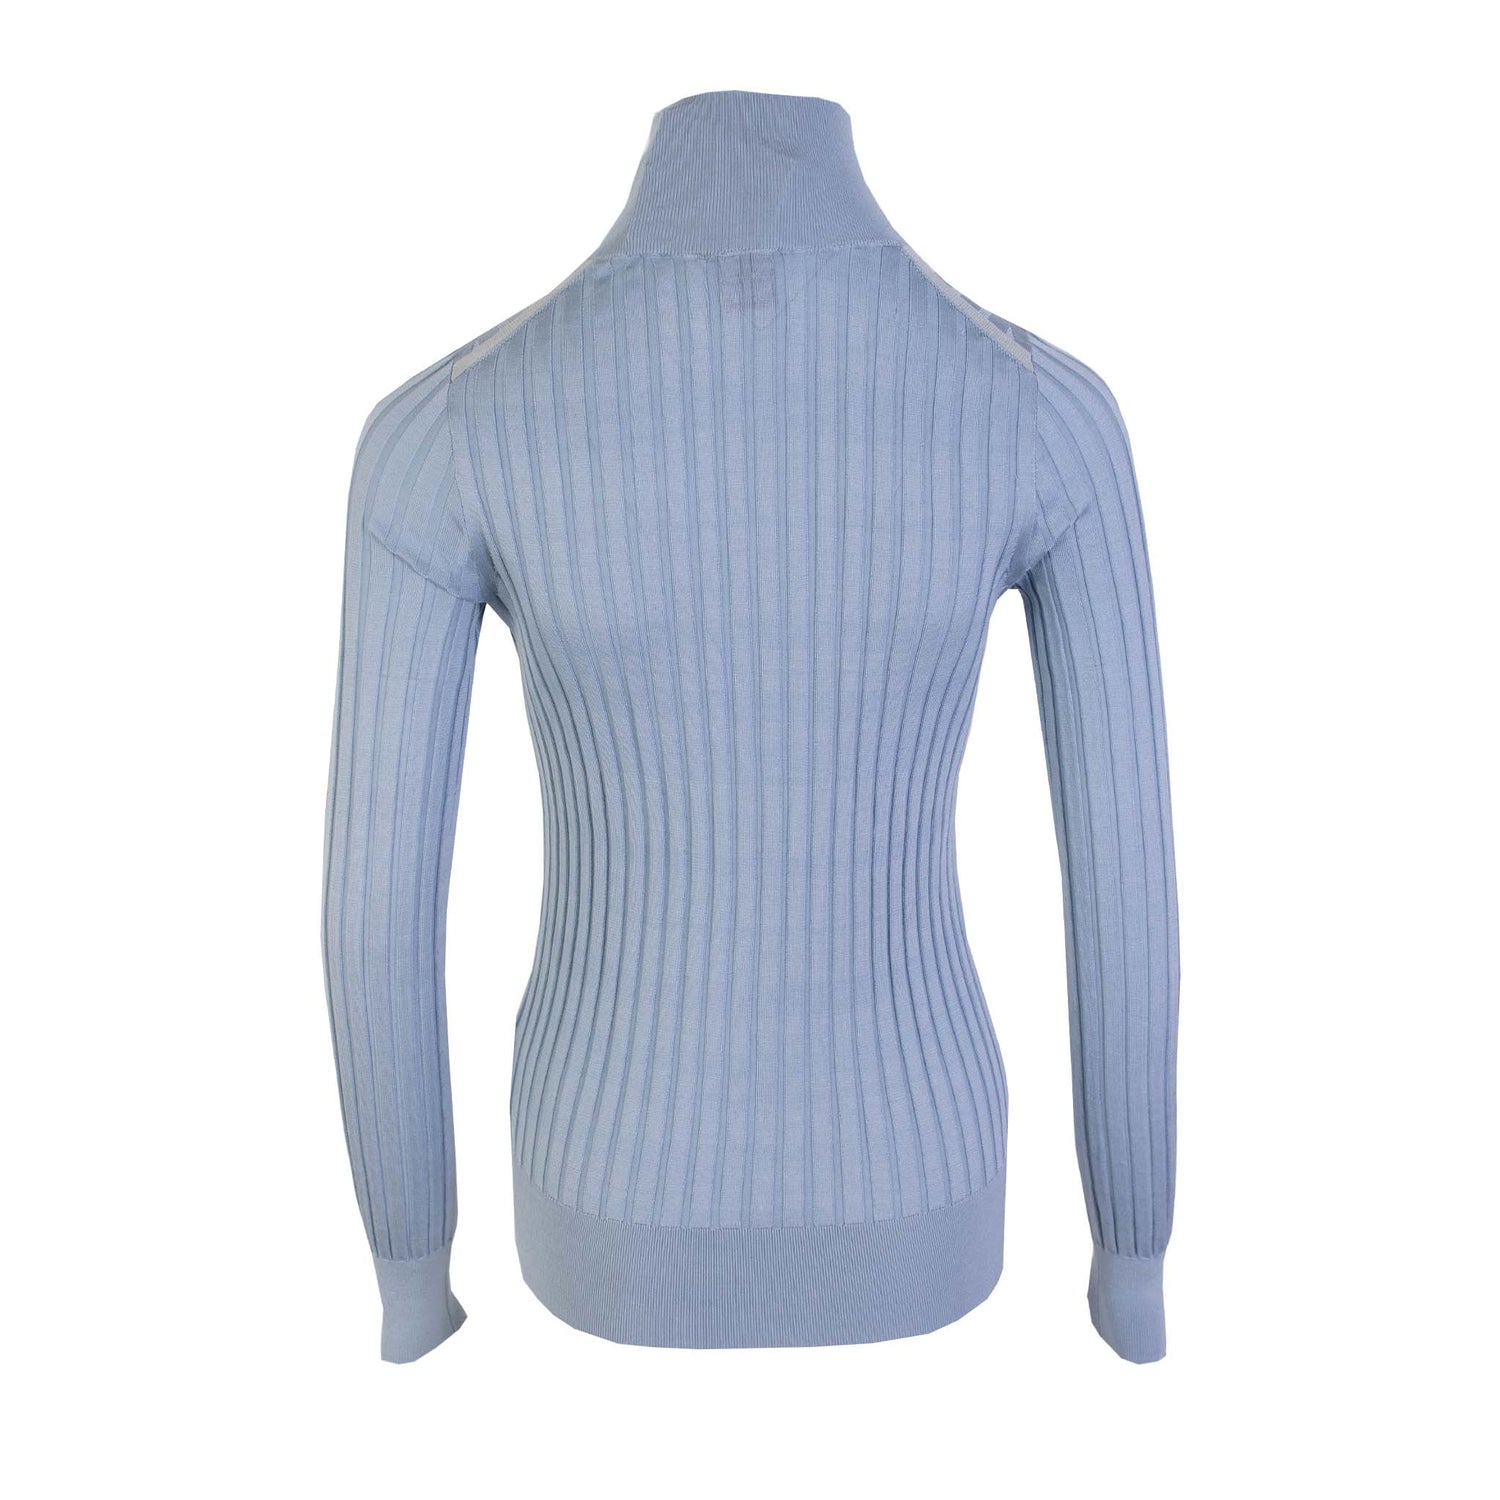 Burberry Silk Light Blue Turtleneck Sweater - DEA STILOSA MILANO